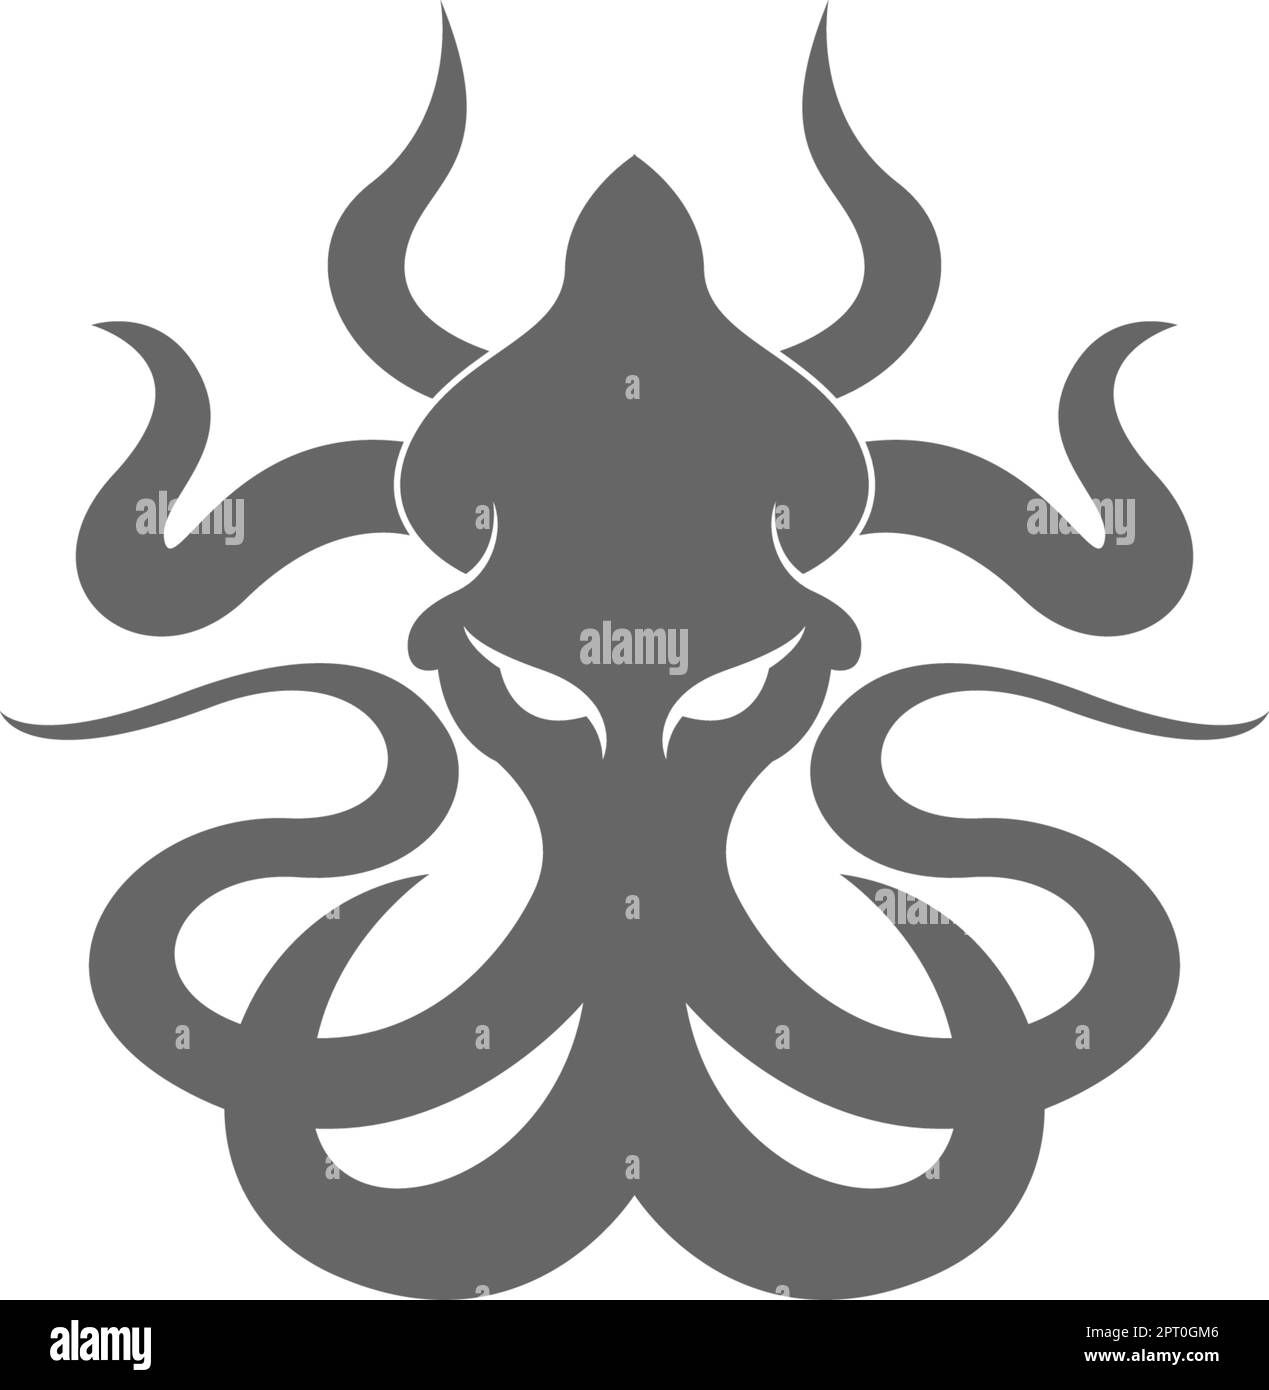 Kraken logo icon illustration Stock Vector